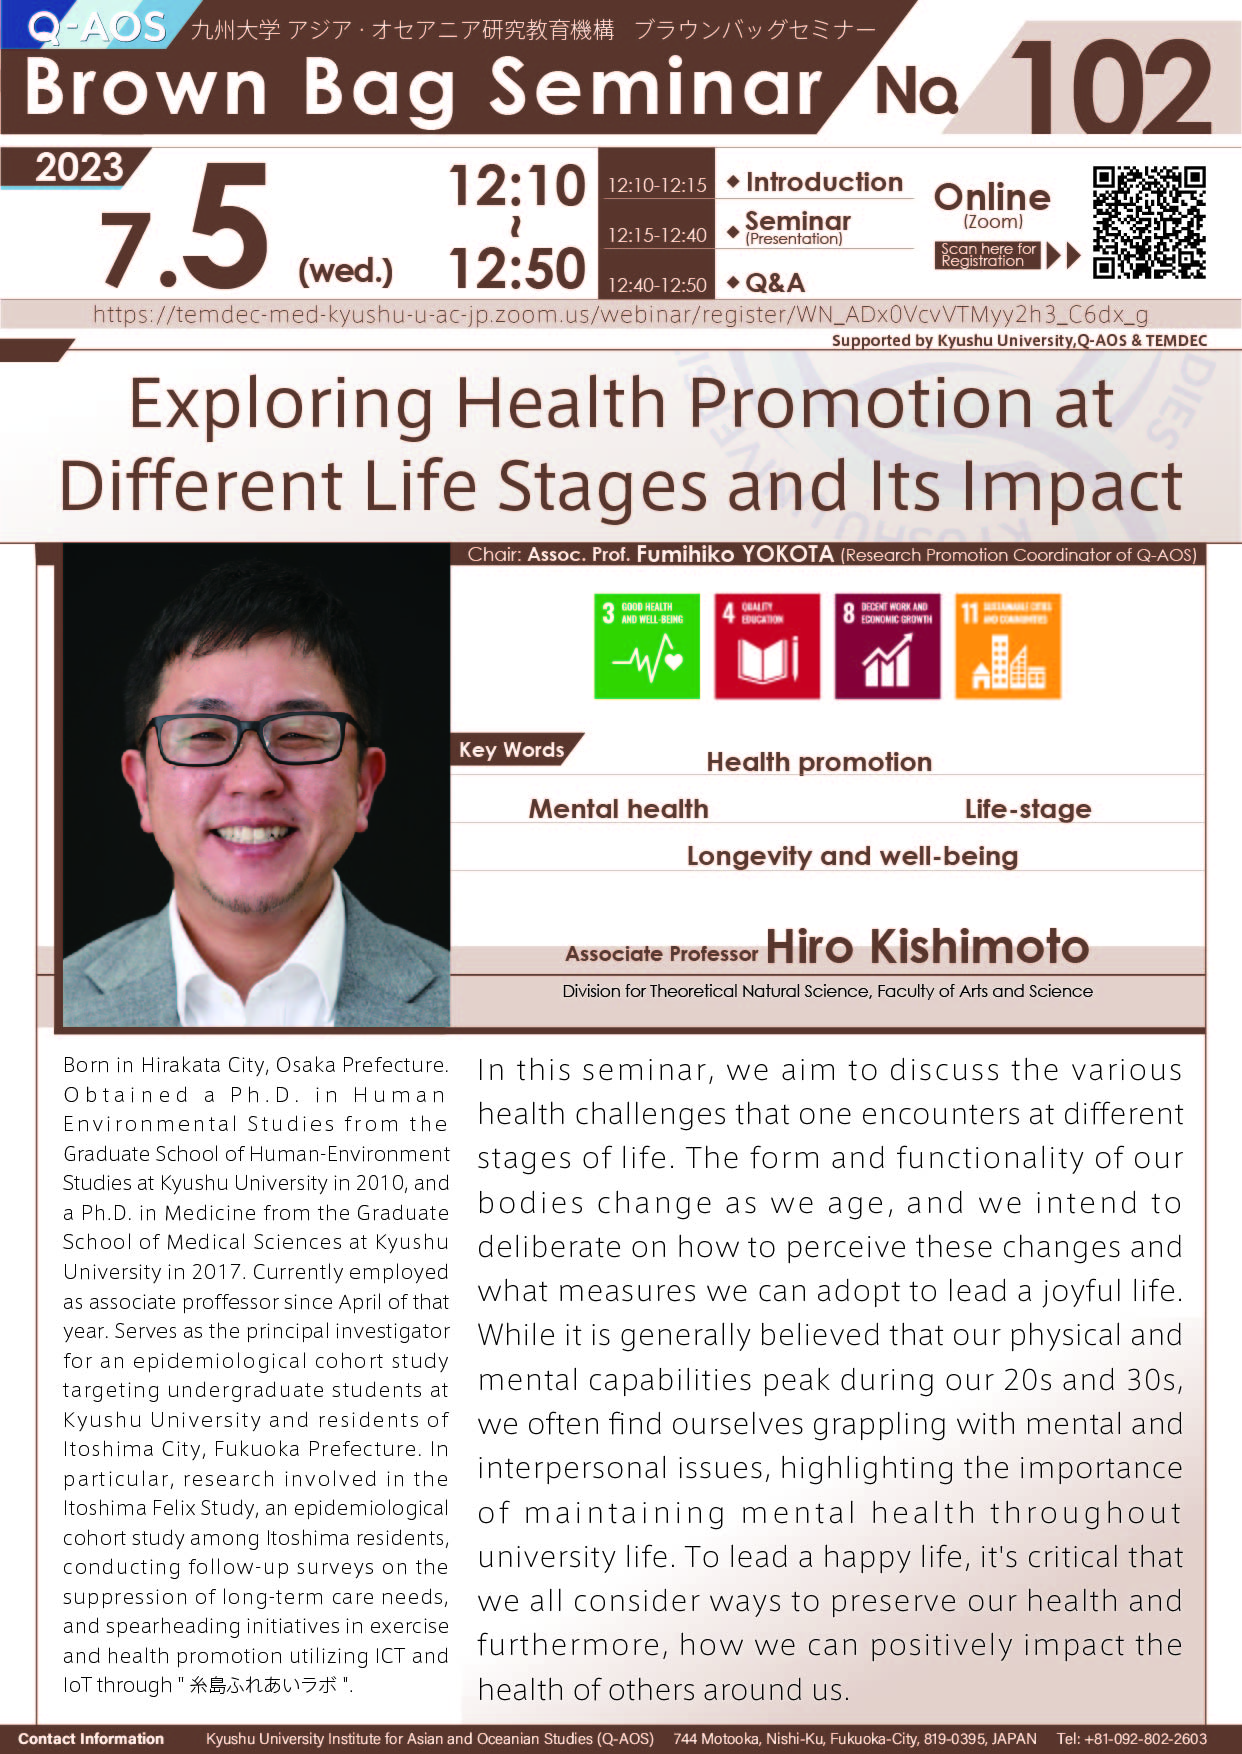 アイキャッチ画像：Q-AOS Brown Bag Seminar Series The 102th Seminar “Exploring Health Promotion at Different Life Stages and Its Impact”